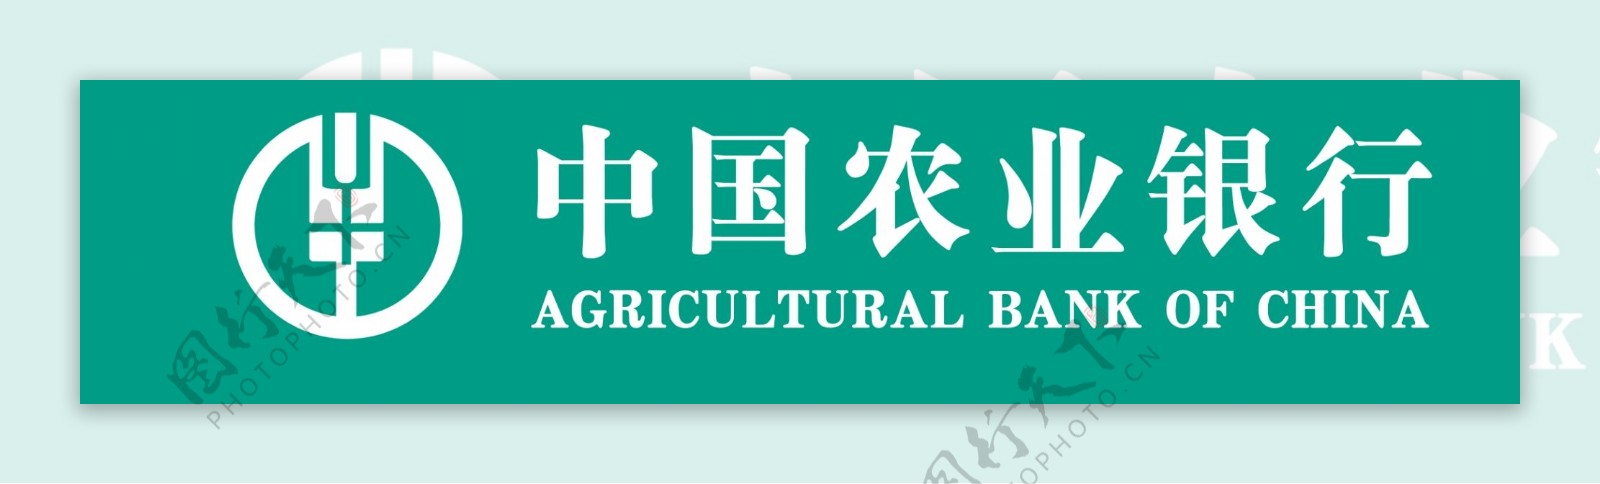 农业银行图片